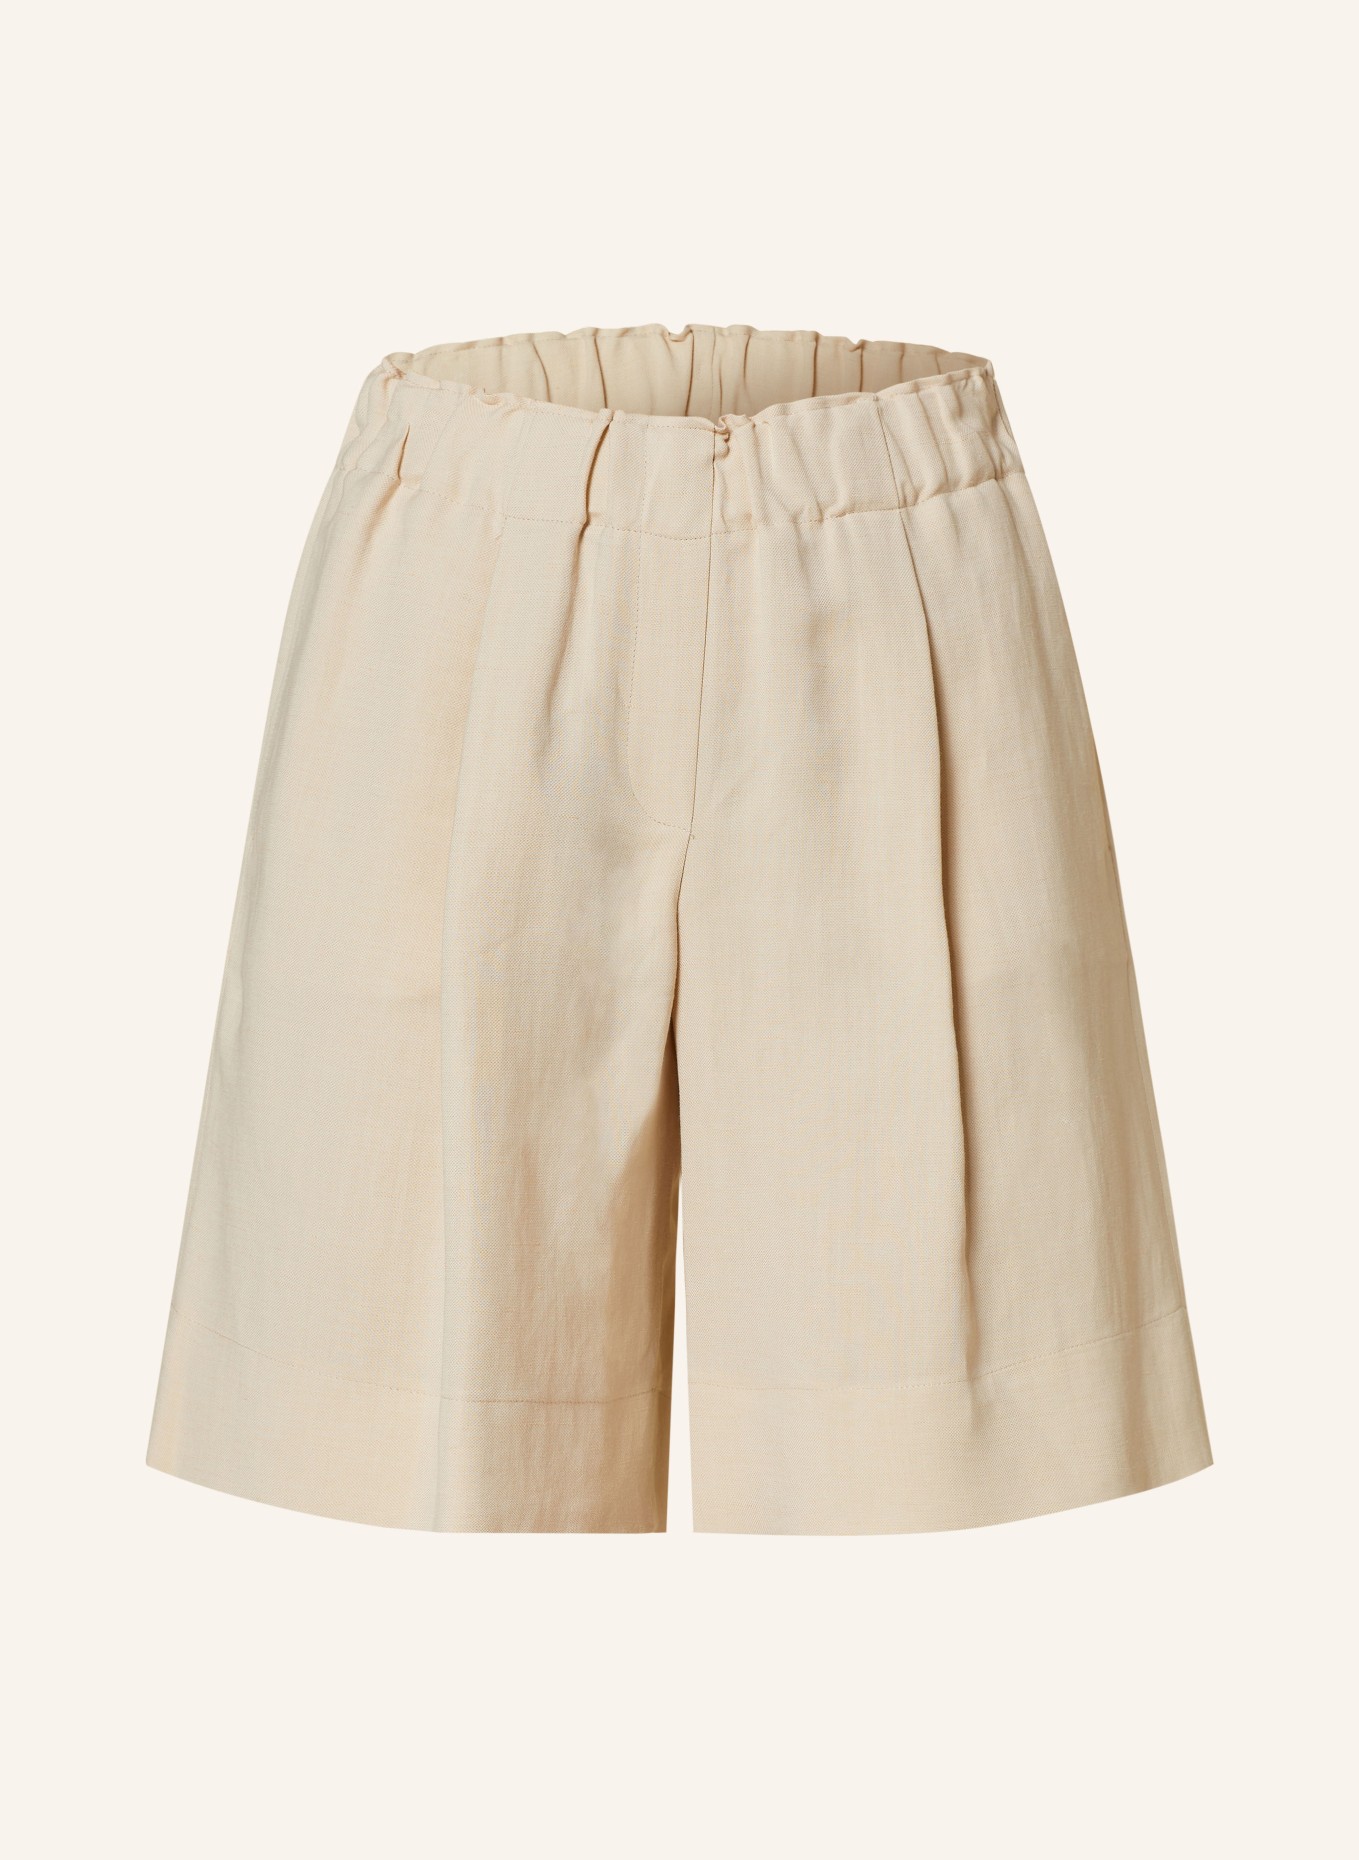 ANTONELLI firenze Shorts SINDY, Farbe: BEIGE (Bild 1)